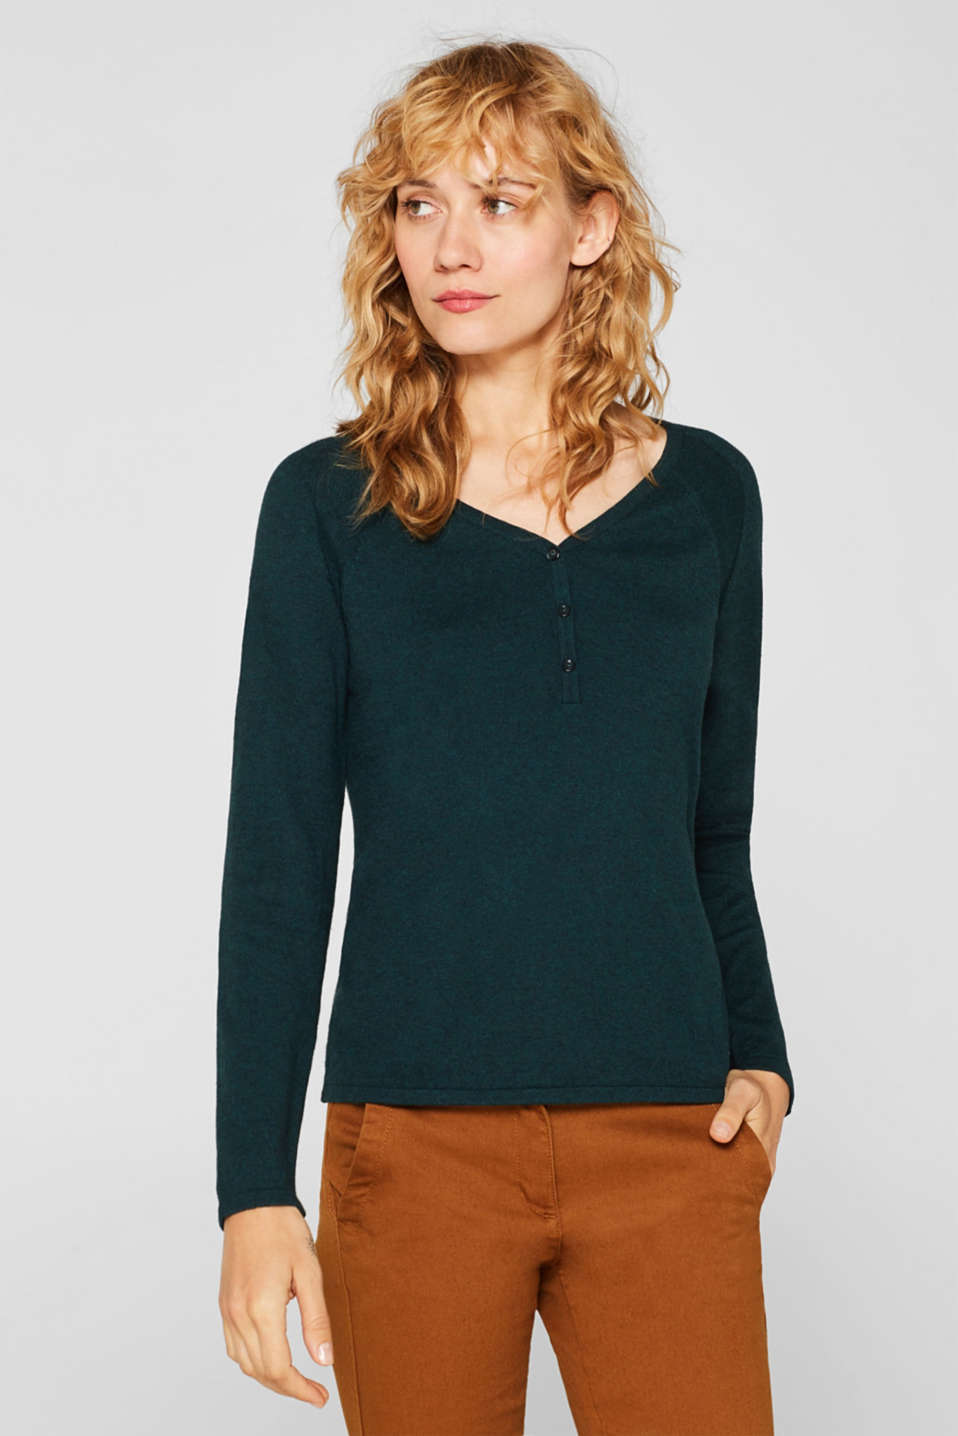 Esprit - V-neck jumper with cashmere at our Online Shop